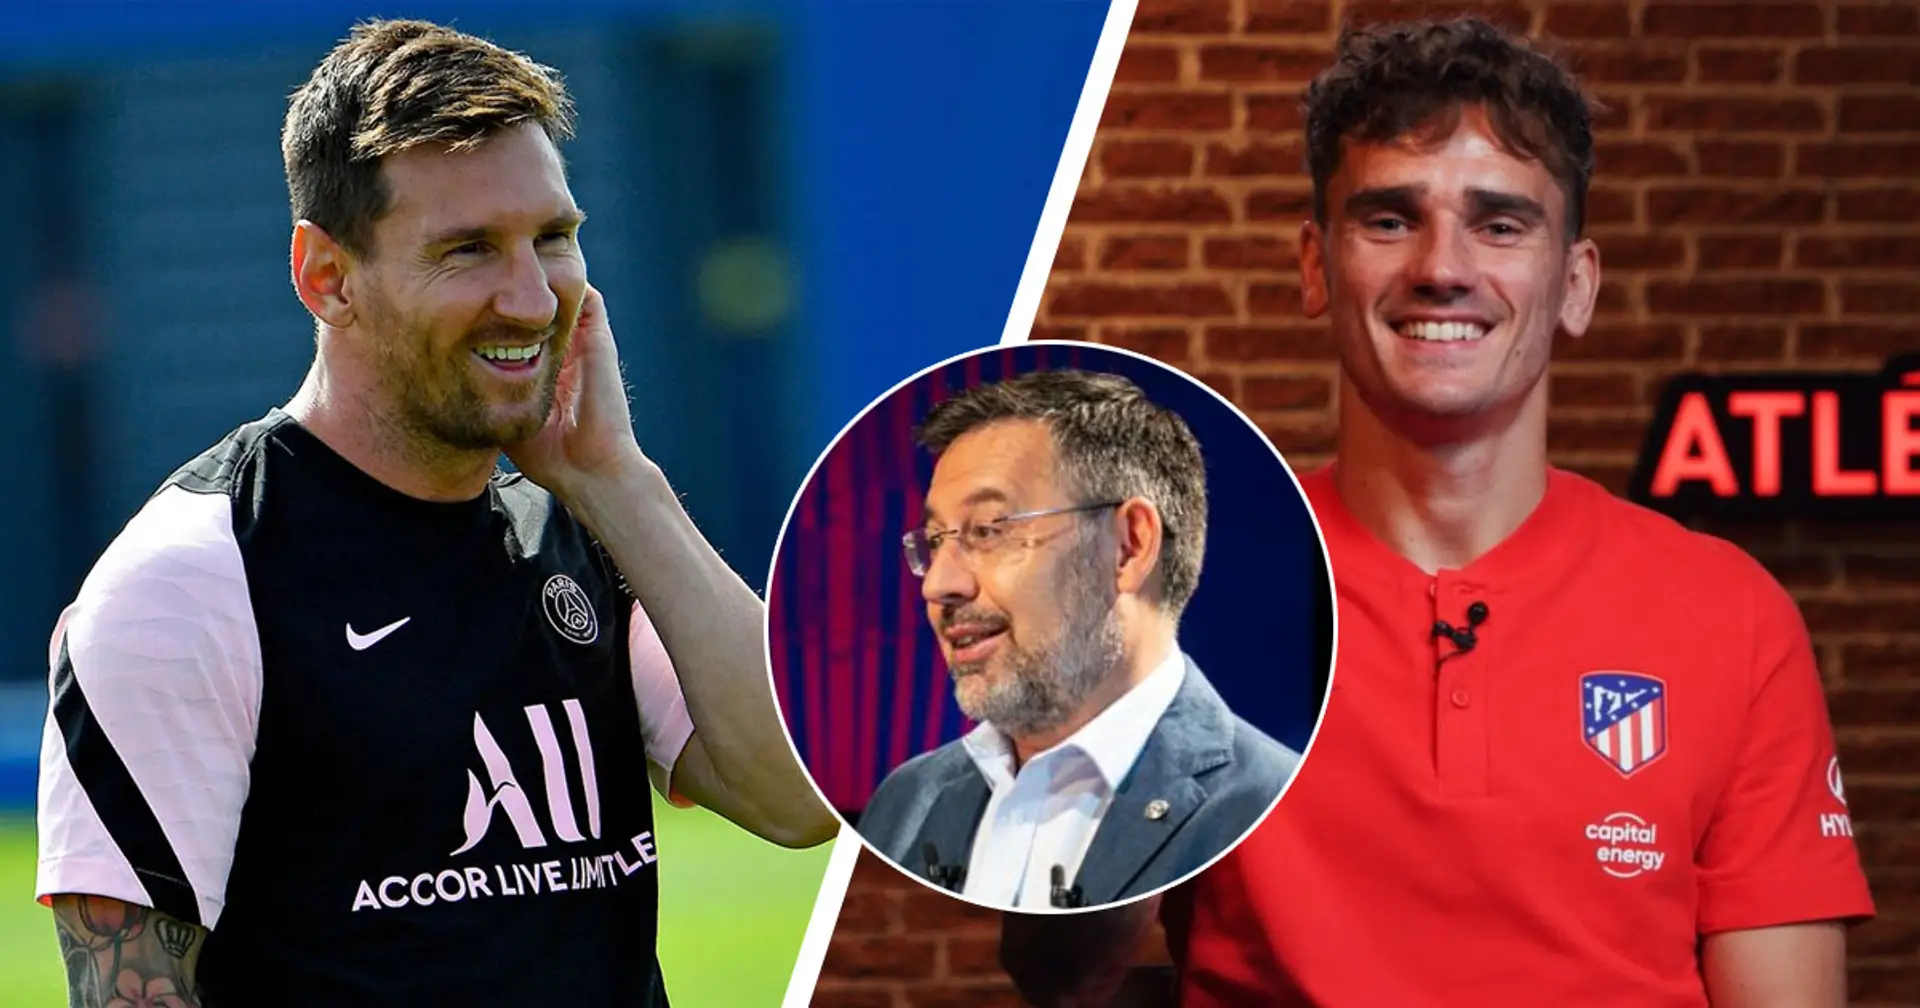 7 joueurs que Bartomeu a qualifié d'"intouchables" en 2020 - 3 ont quitté le Barça